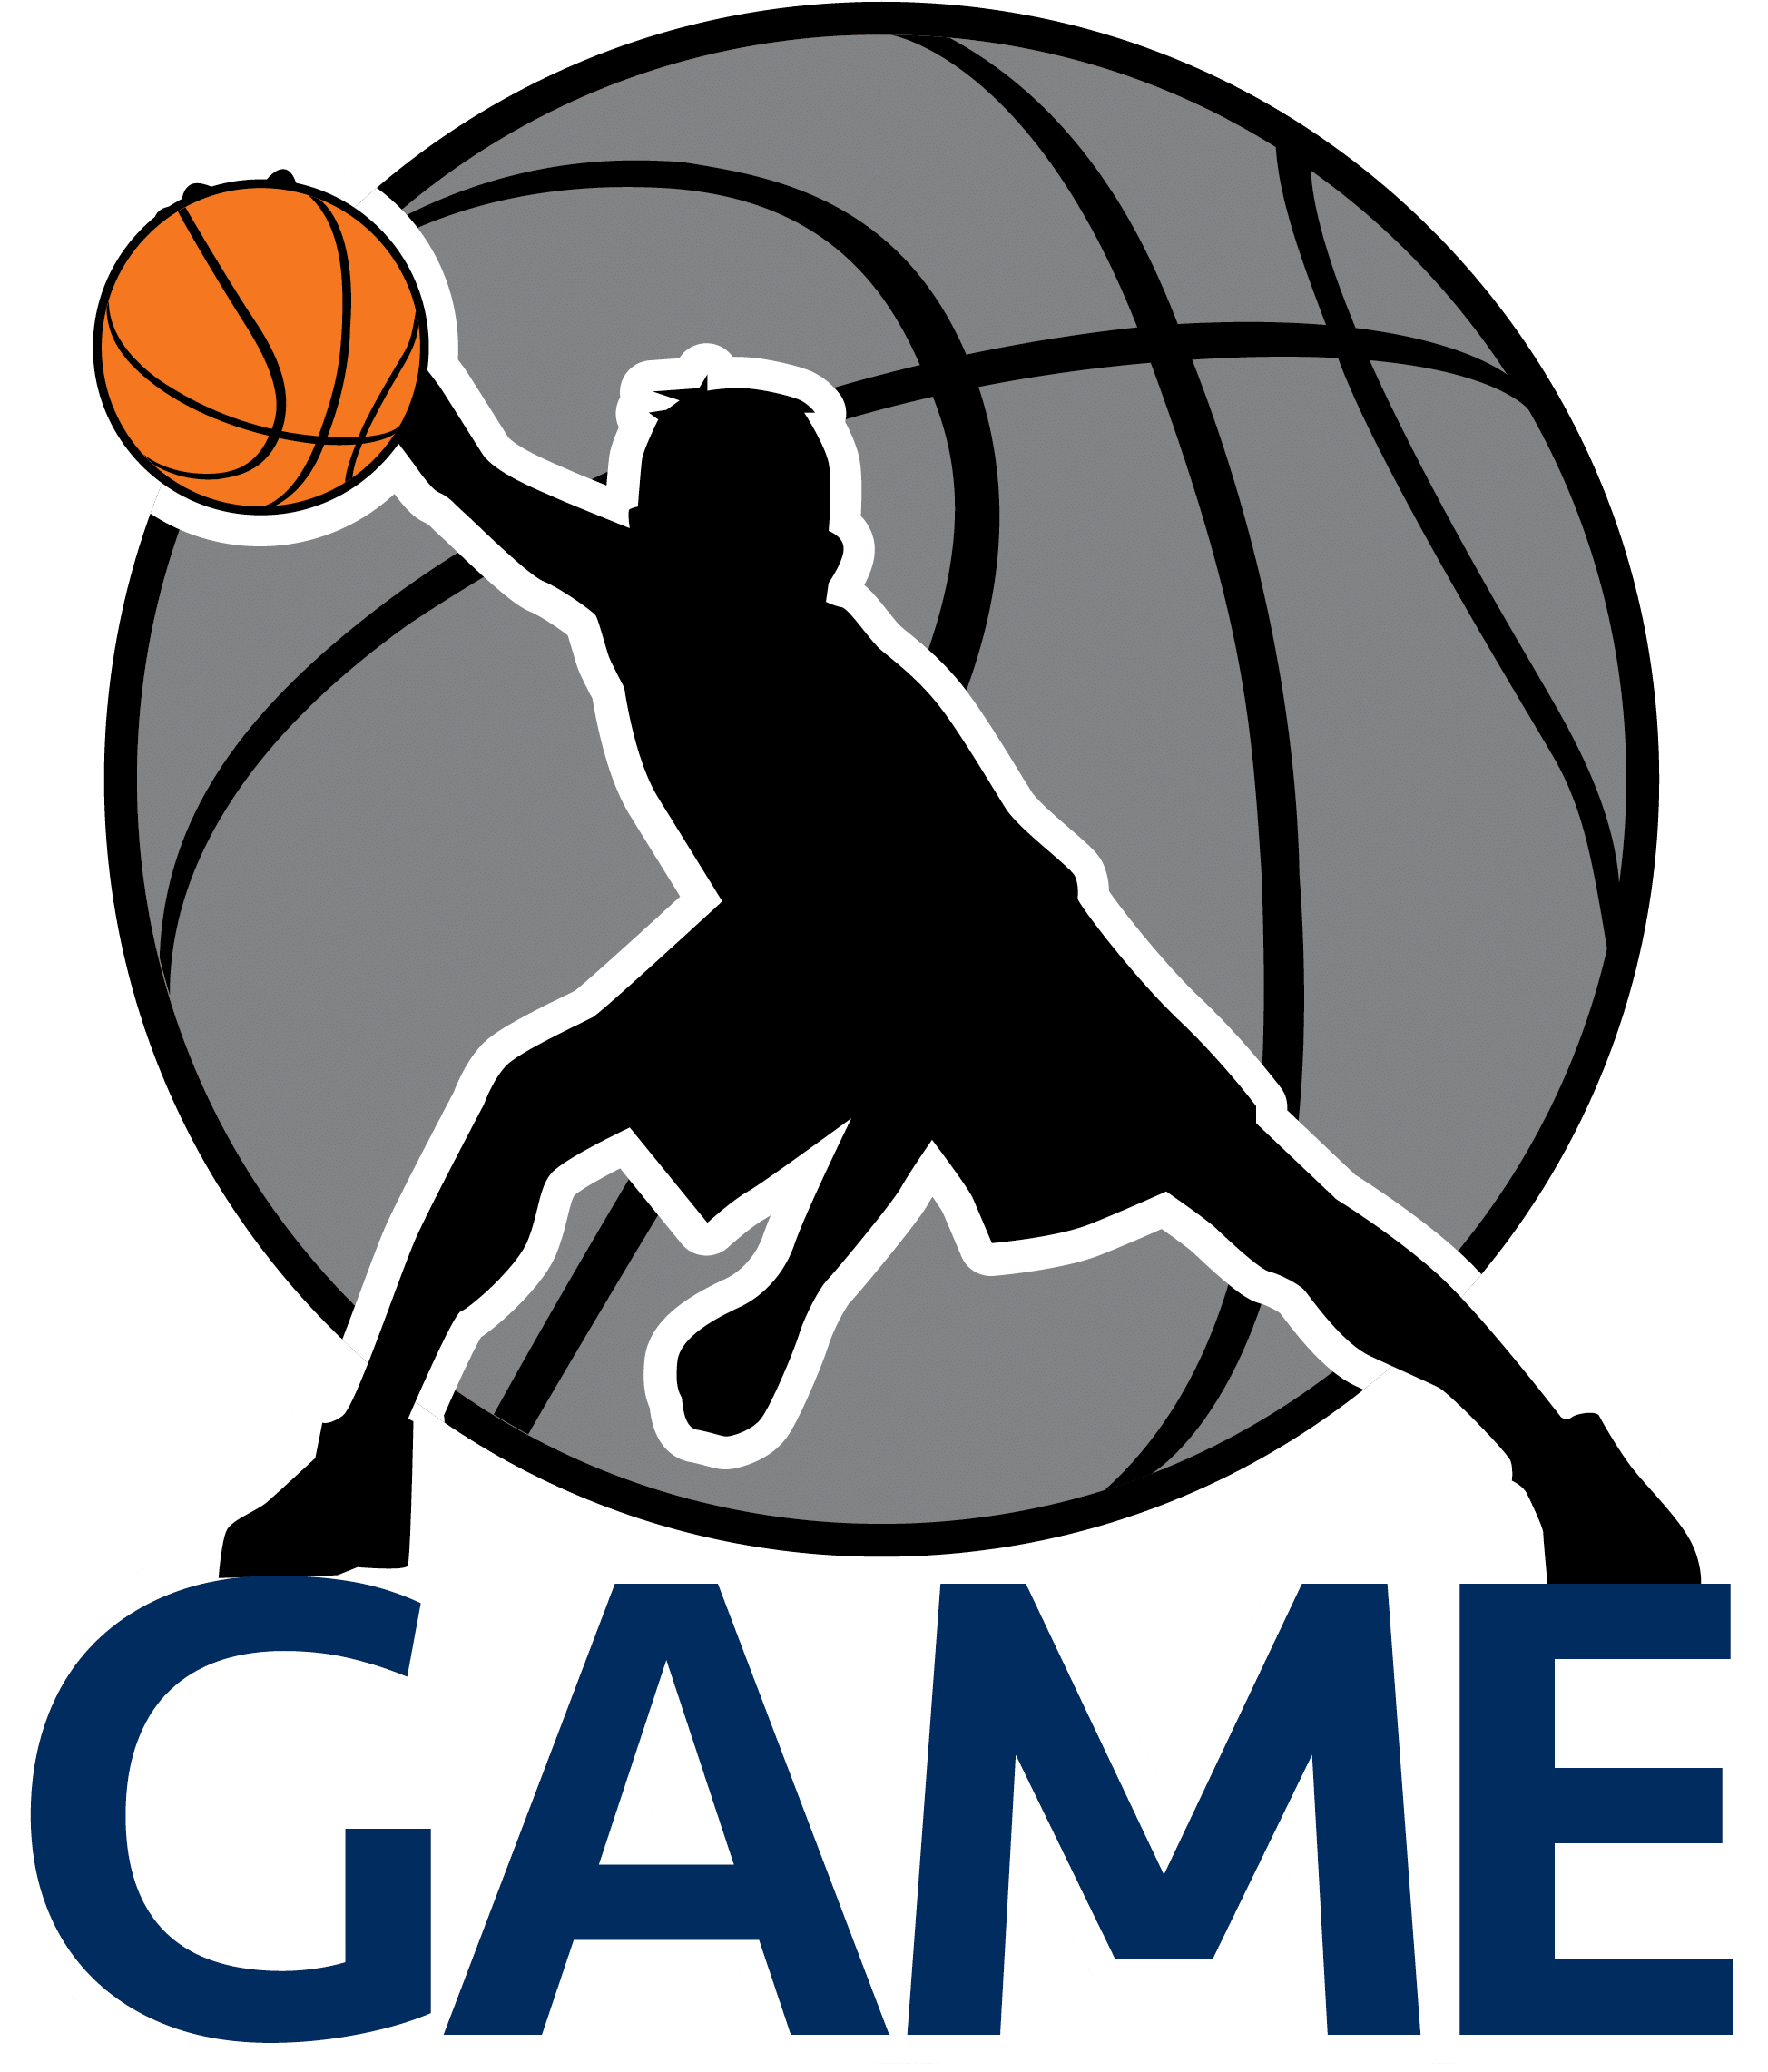 Баскетбольная команда логотип PNG высококачественный образ